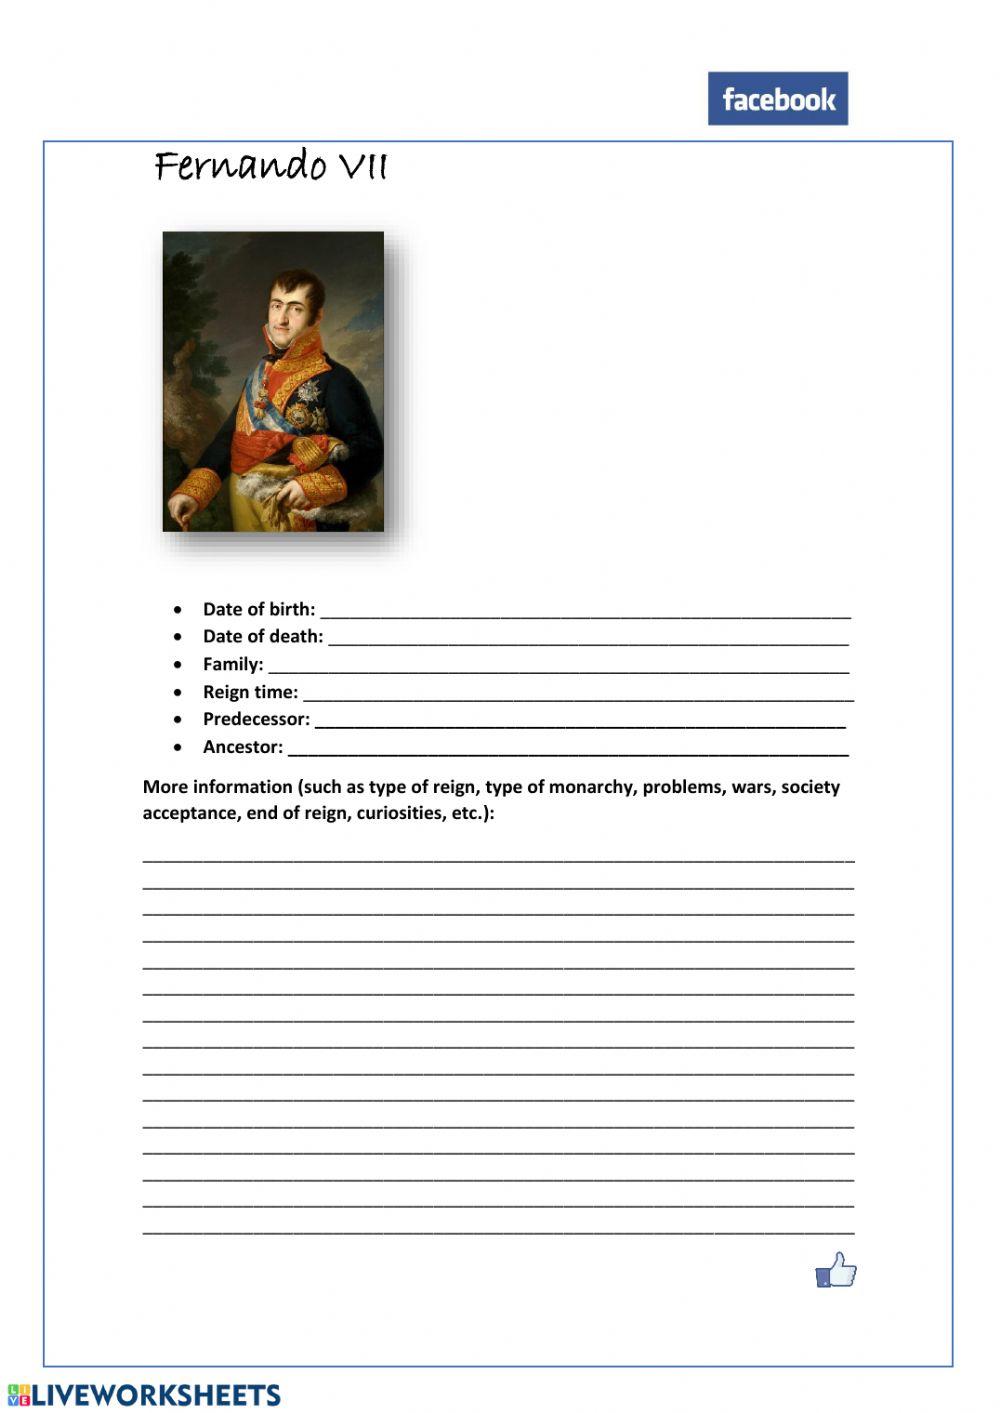 Fernando VII fabebook profile